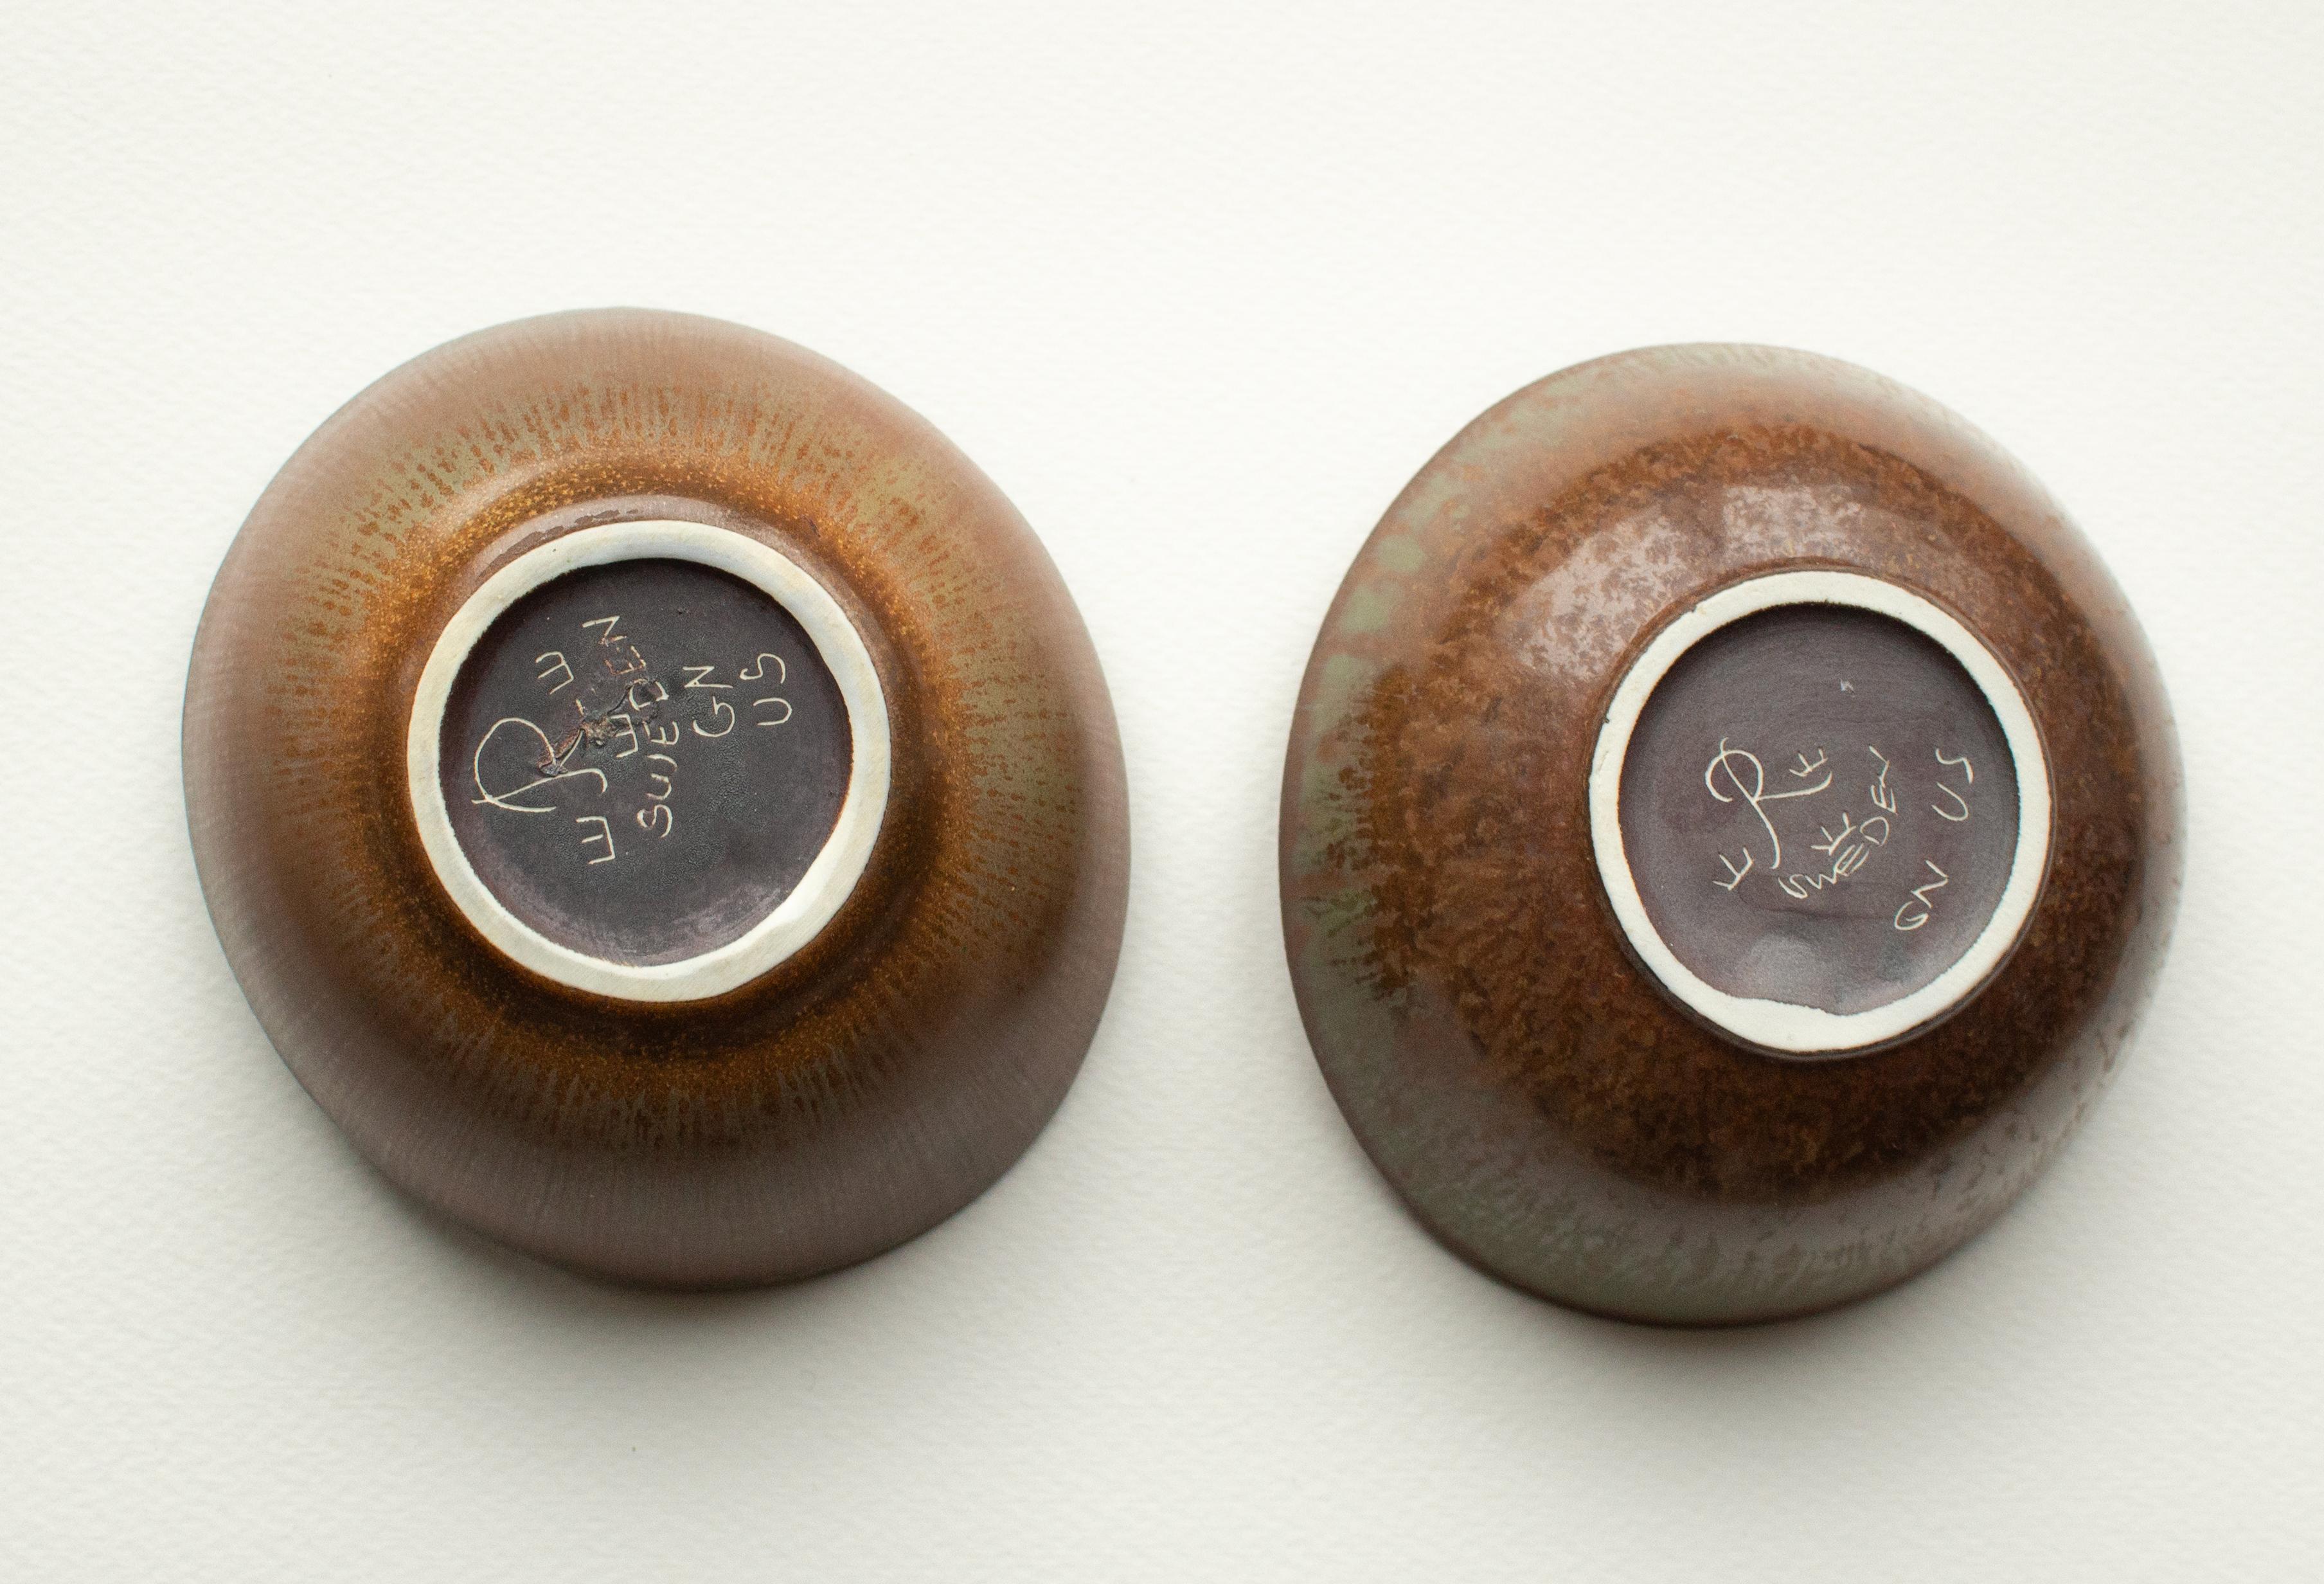 Deux bols classiques en grès émaillé brun et beige, conçus et produits en Suède, années 1940. Marqué comme étant de 1ère qualité. 
Gunnar Nylund, né à Paris en 1904 de parents engagés dans la sculpture et le design, s'est lancé très tôt dans sa